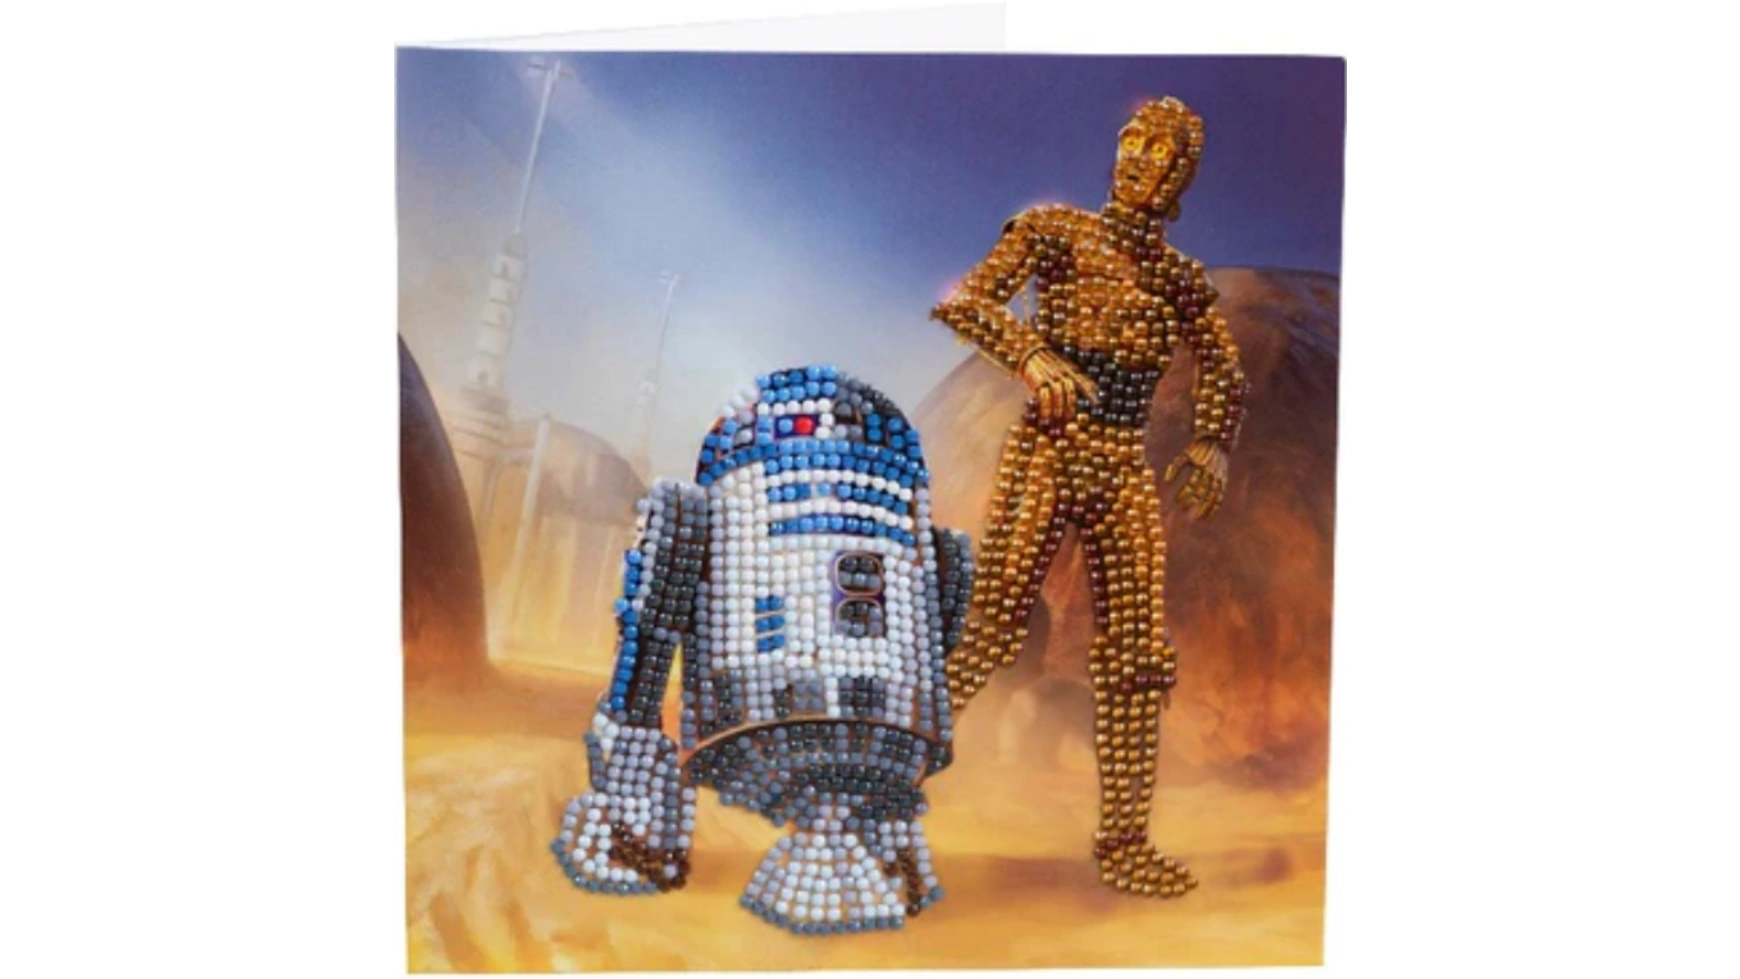 Craft Buddy Crystal Art Алмазная картина R2-D2 и C-3PO 18x18см Кристаллическая художественная открытка craft buddy crystal art алмазная картина r2 d2 и c 3po 18x18см кристаллическая художественная открытка